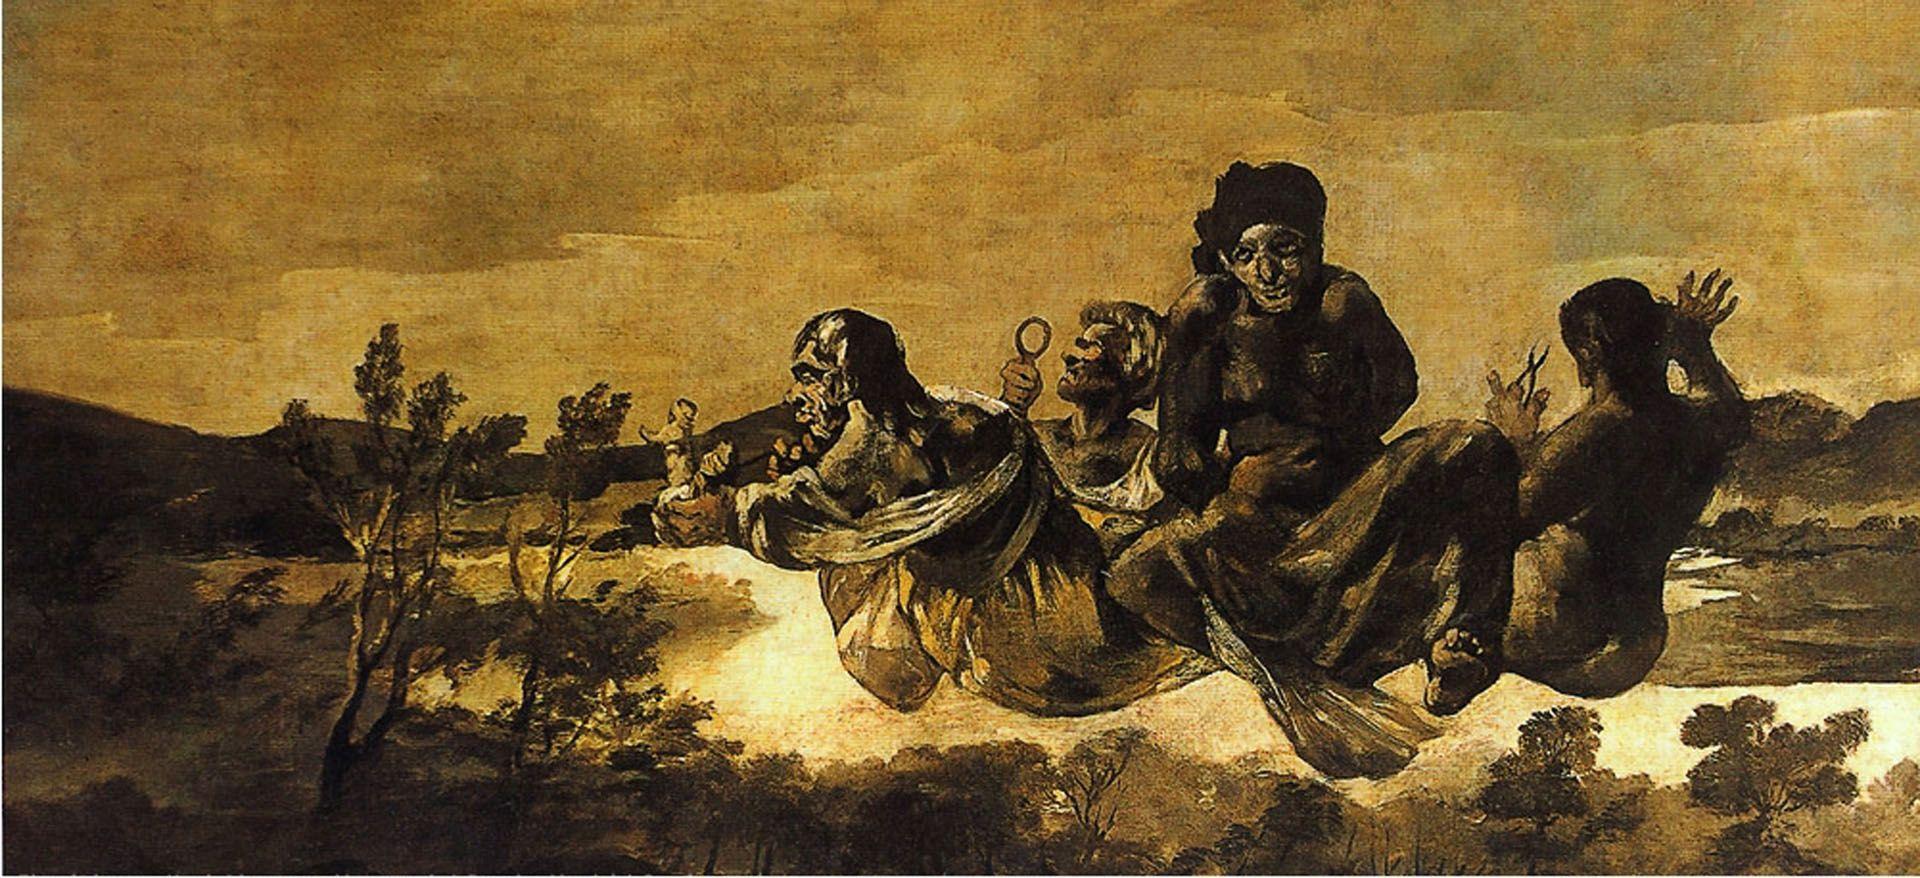 Francisco Goya Paintings Wallpaper Gallery